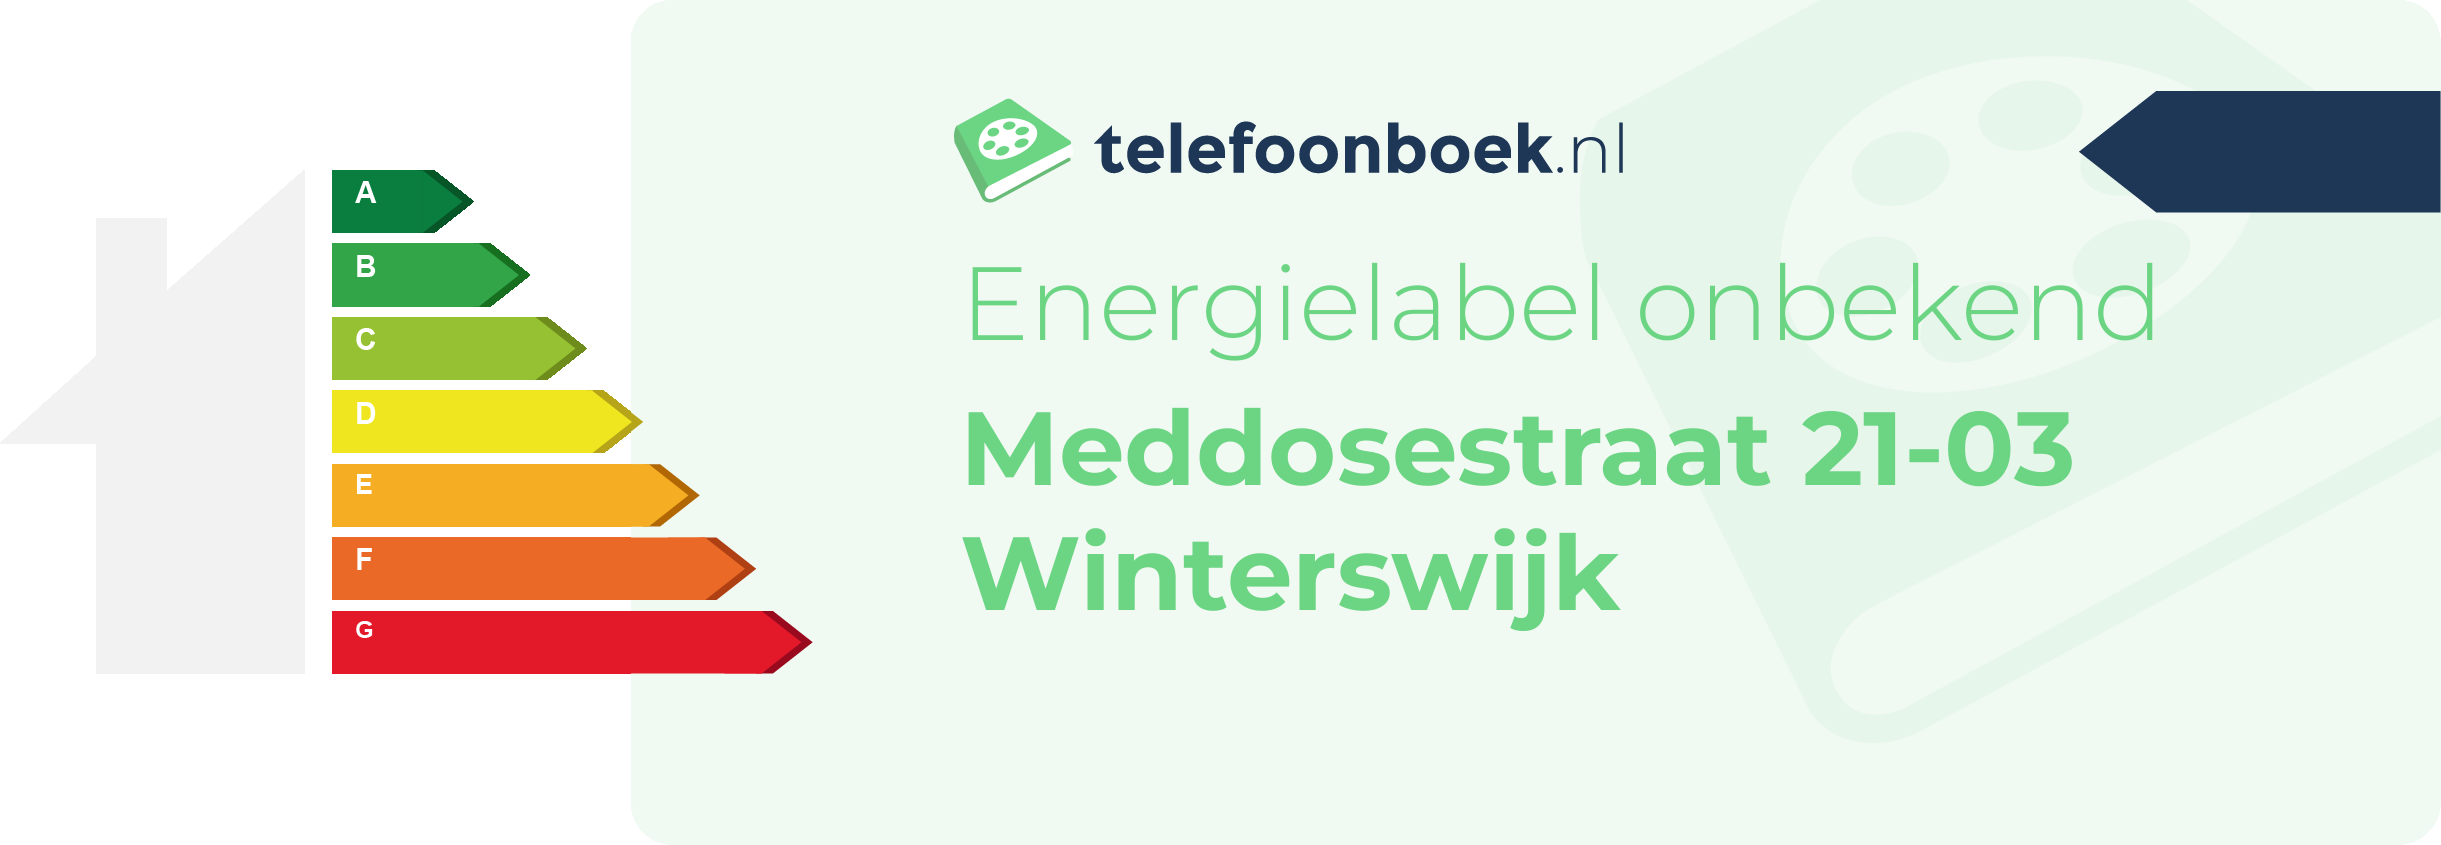 Energielabel Meddosestraat 21-03 Winterswijk